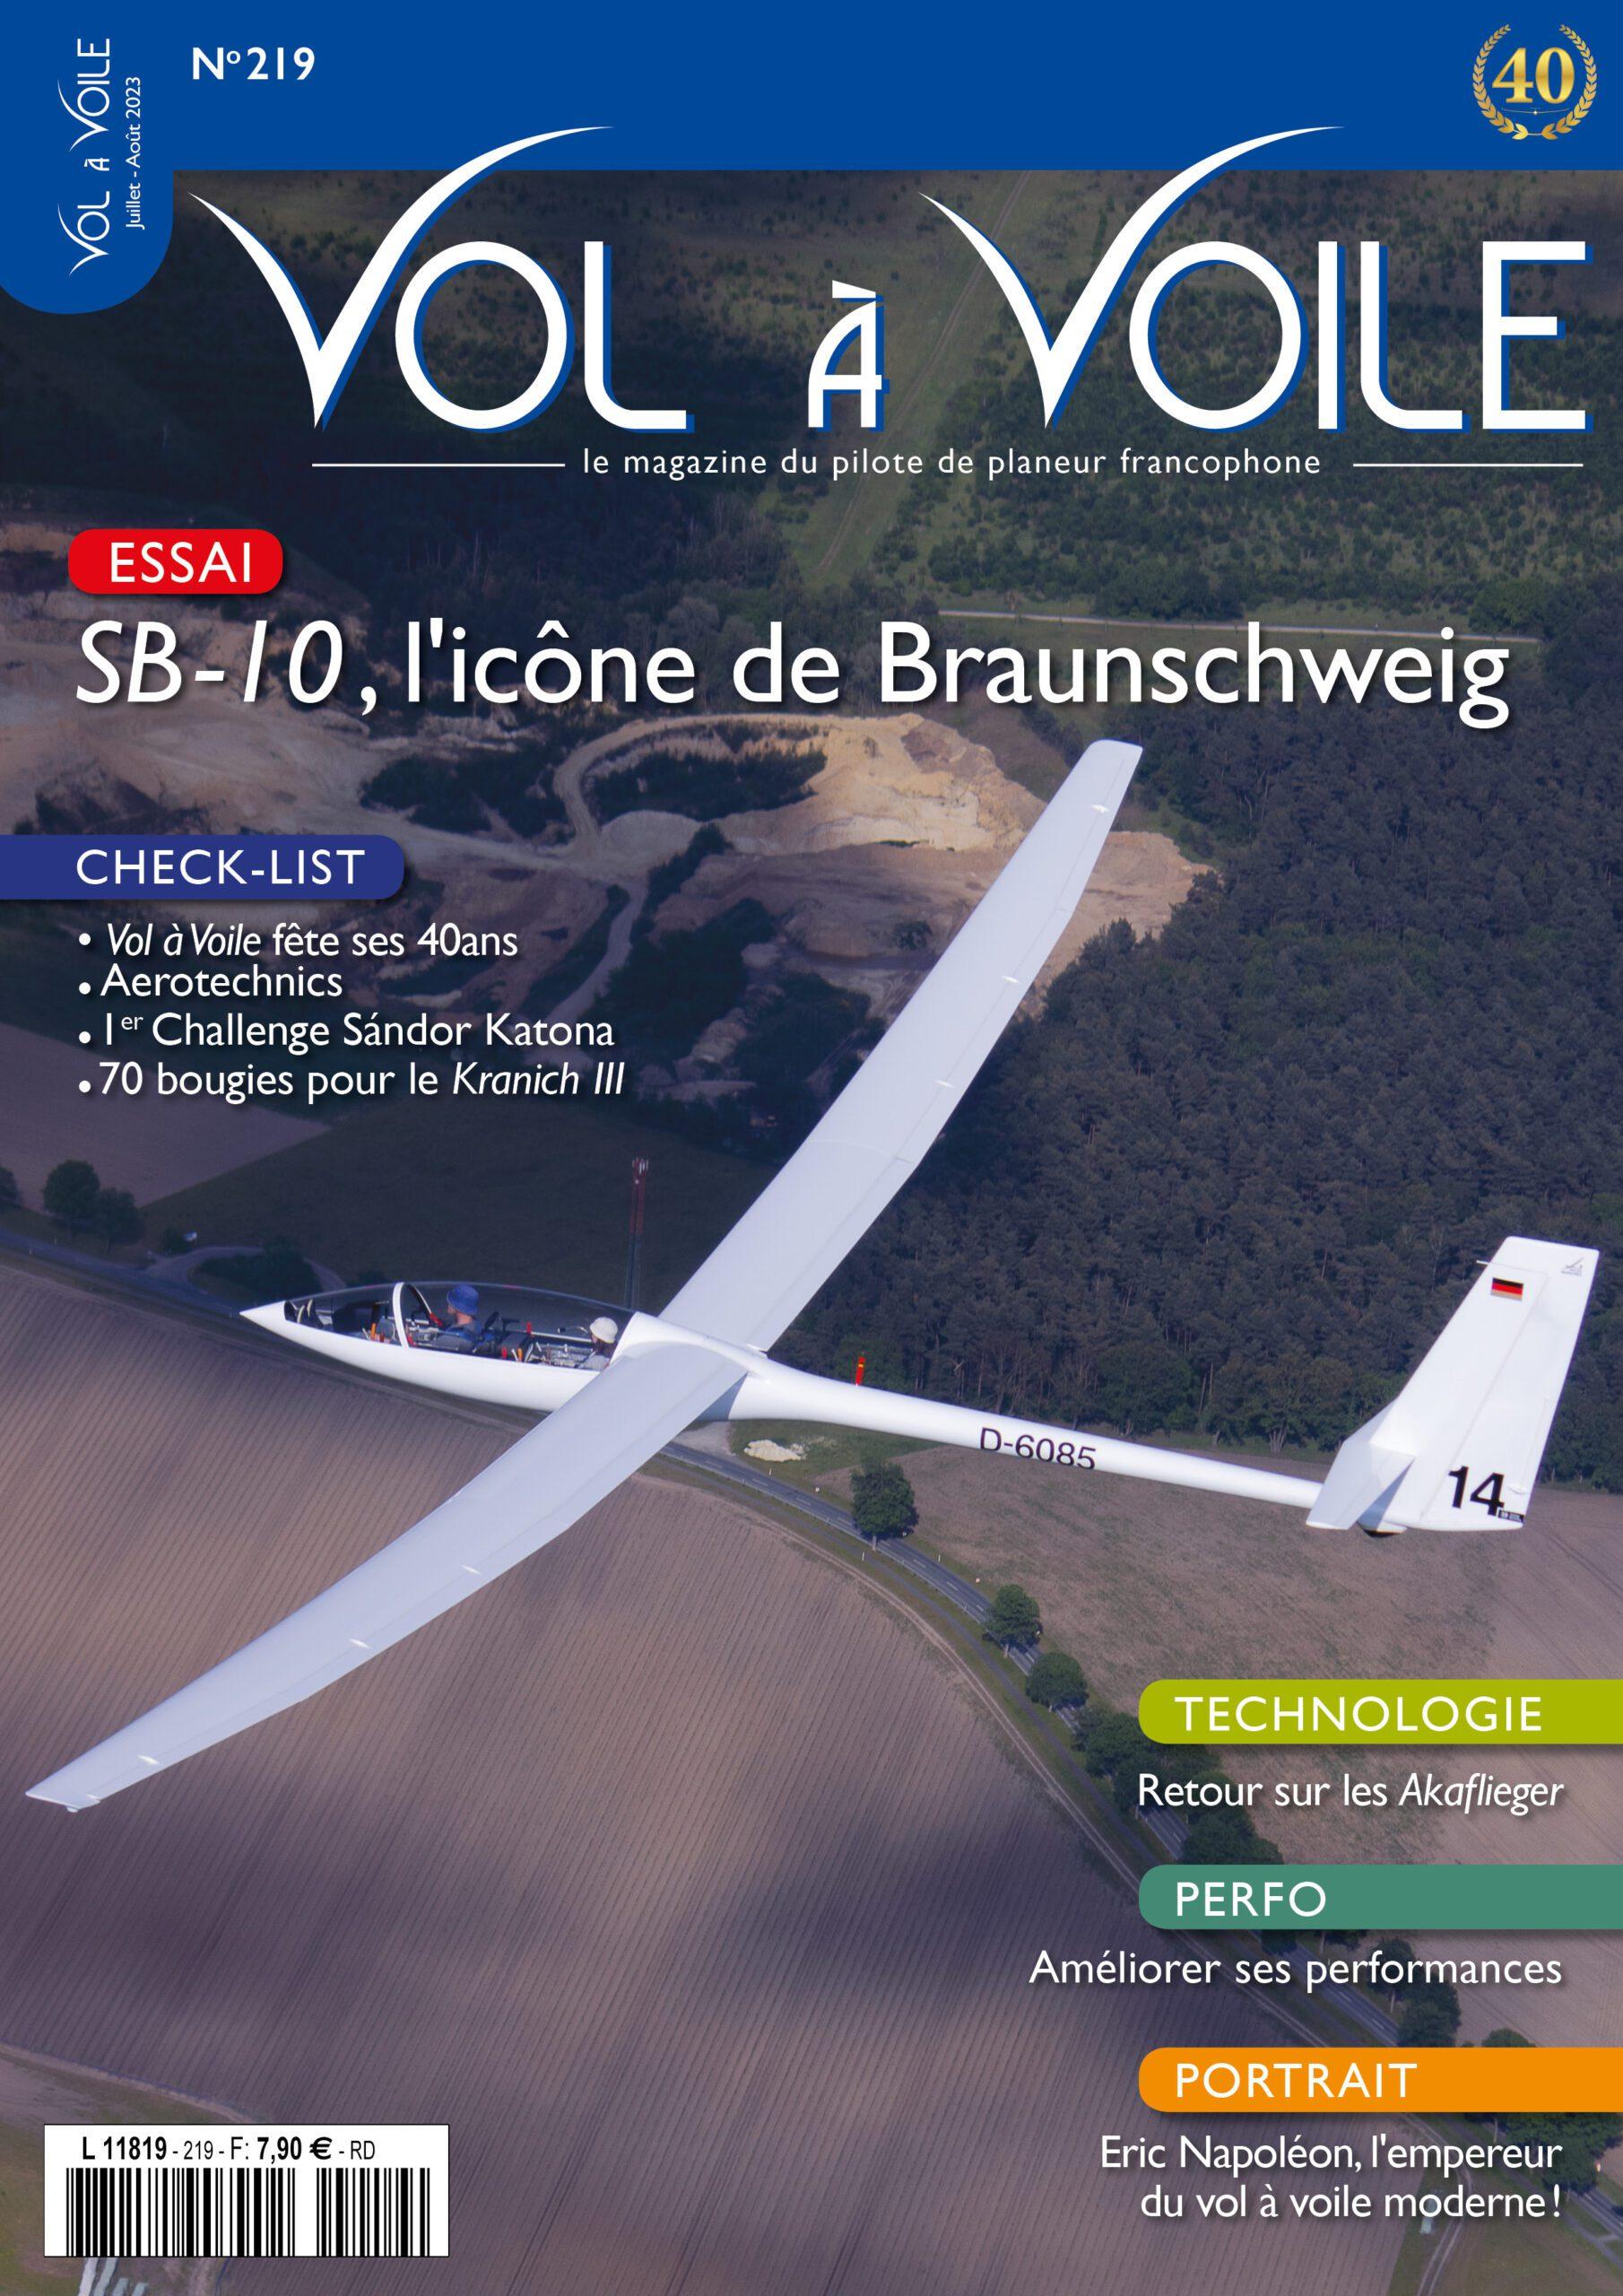 VOL A VOILE – Le Magazine du pilote de planeur francophone